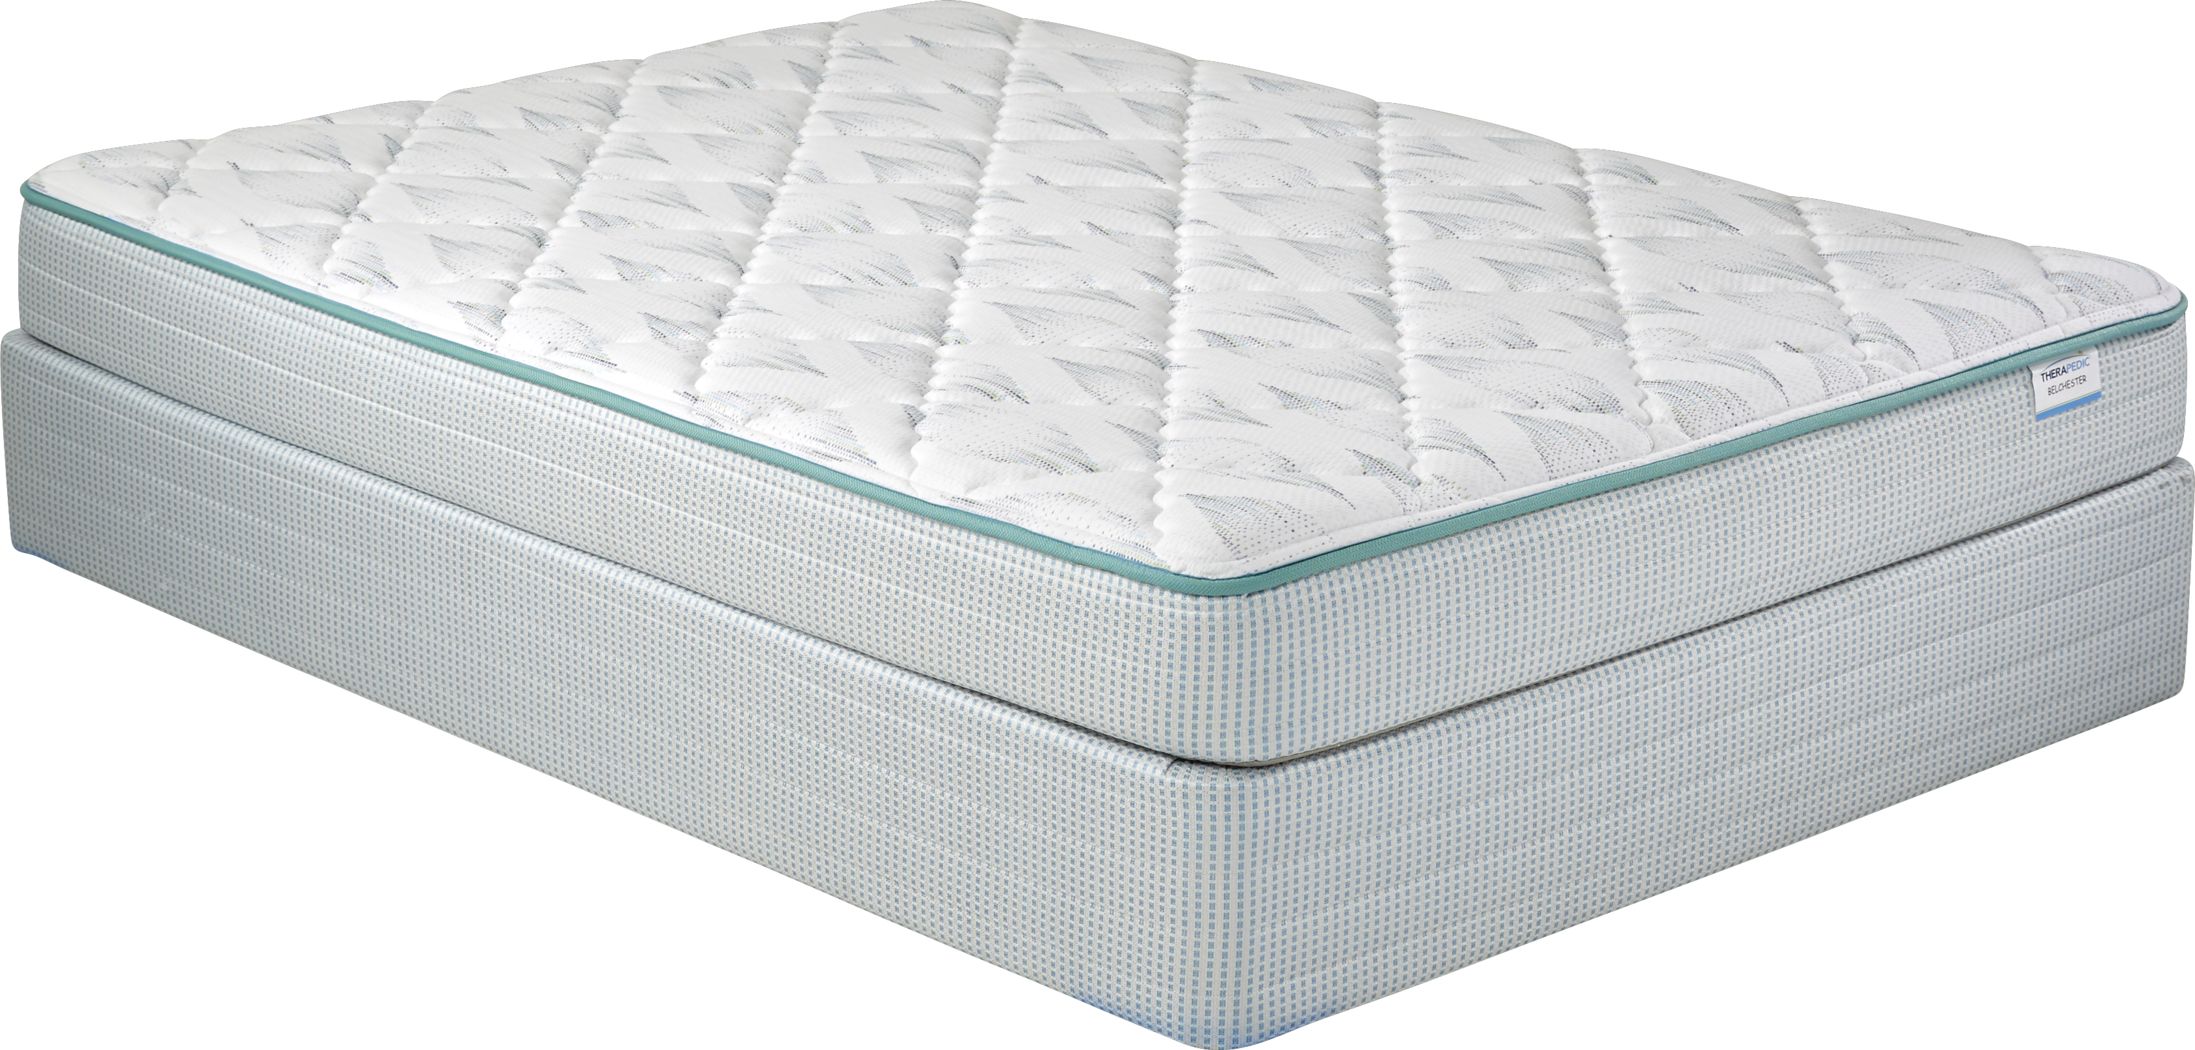 therapedic advent full mattress